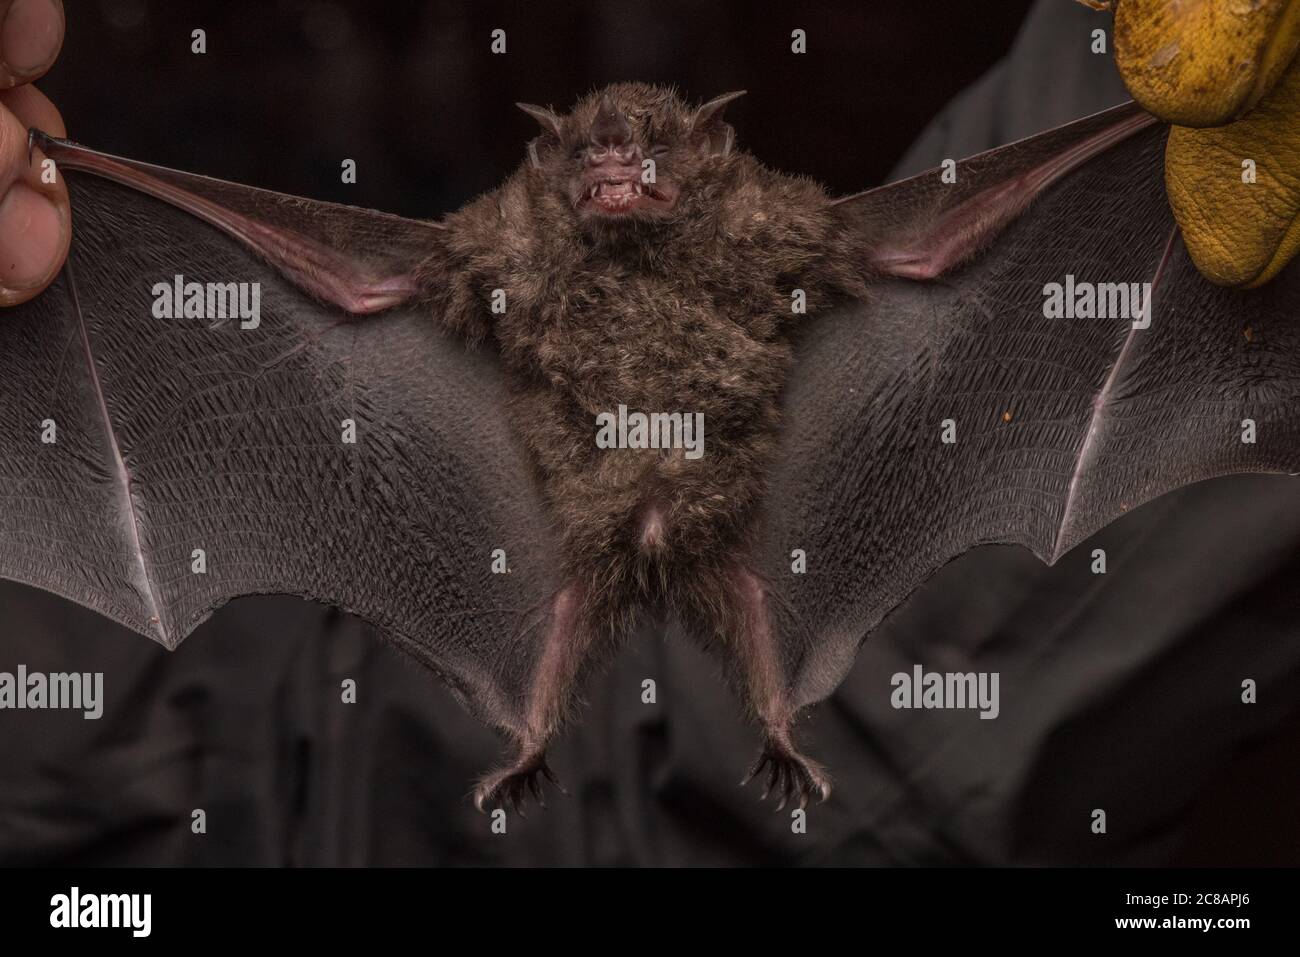 A bat captured for bat research in the Peruvian jungle. Stock Photo